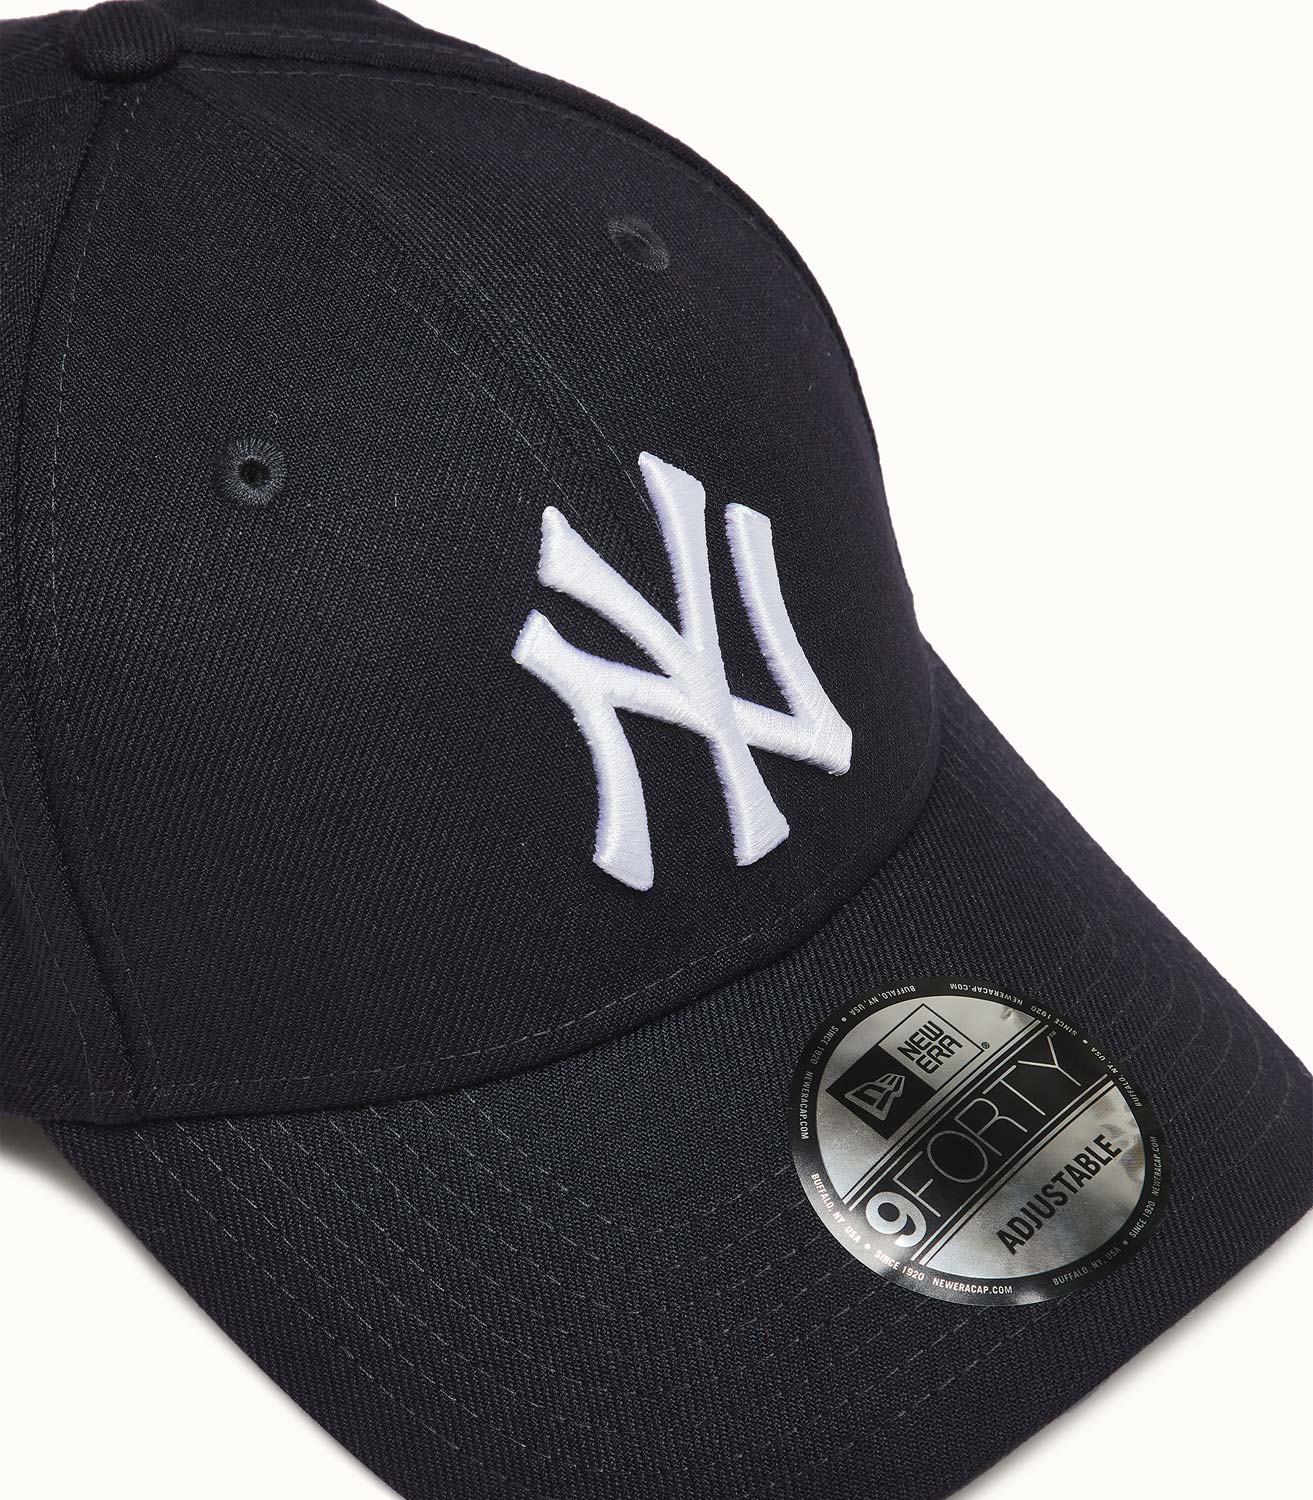 New Era 9FORTY NY Yankees Black Baseball Cap